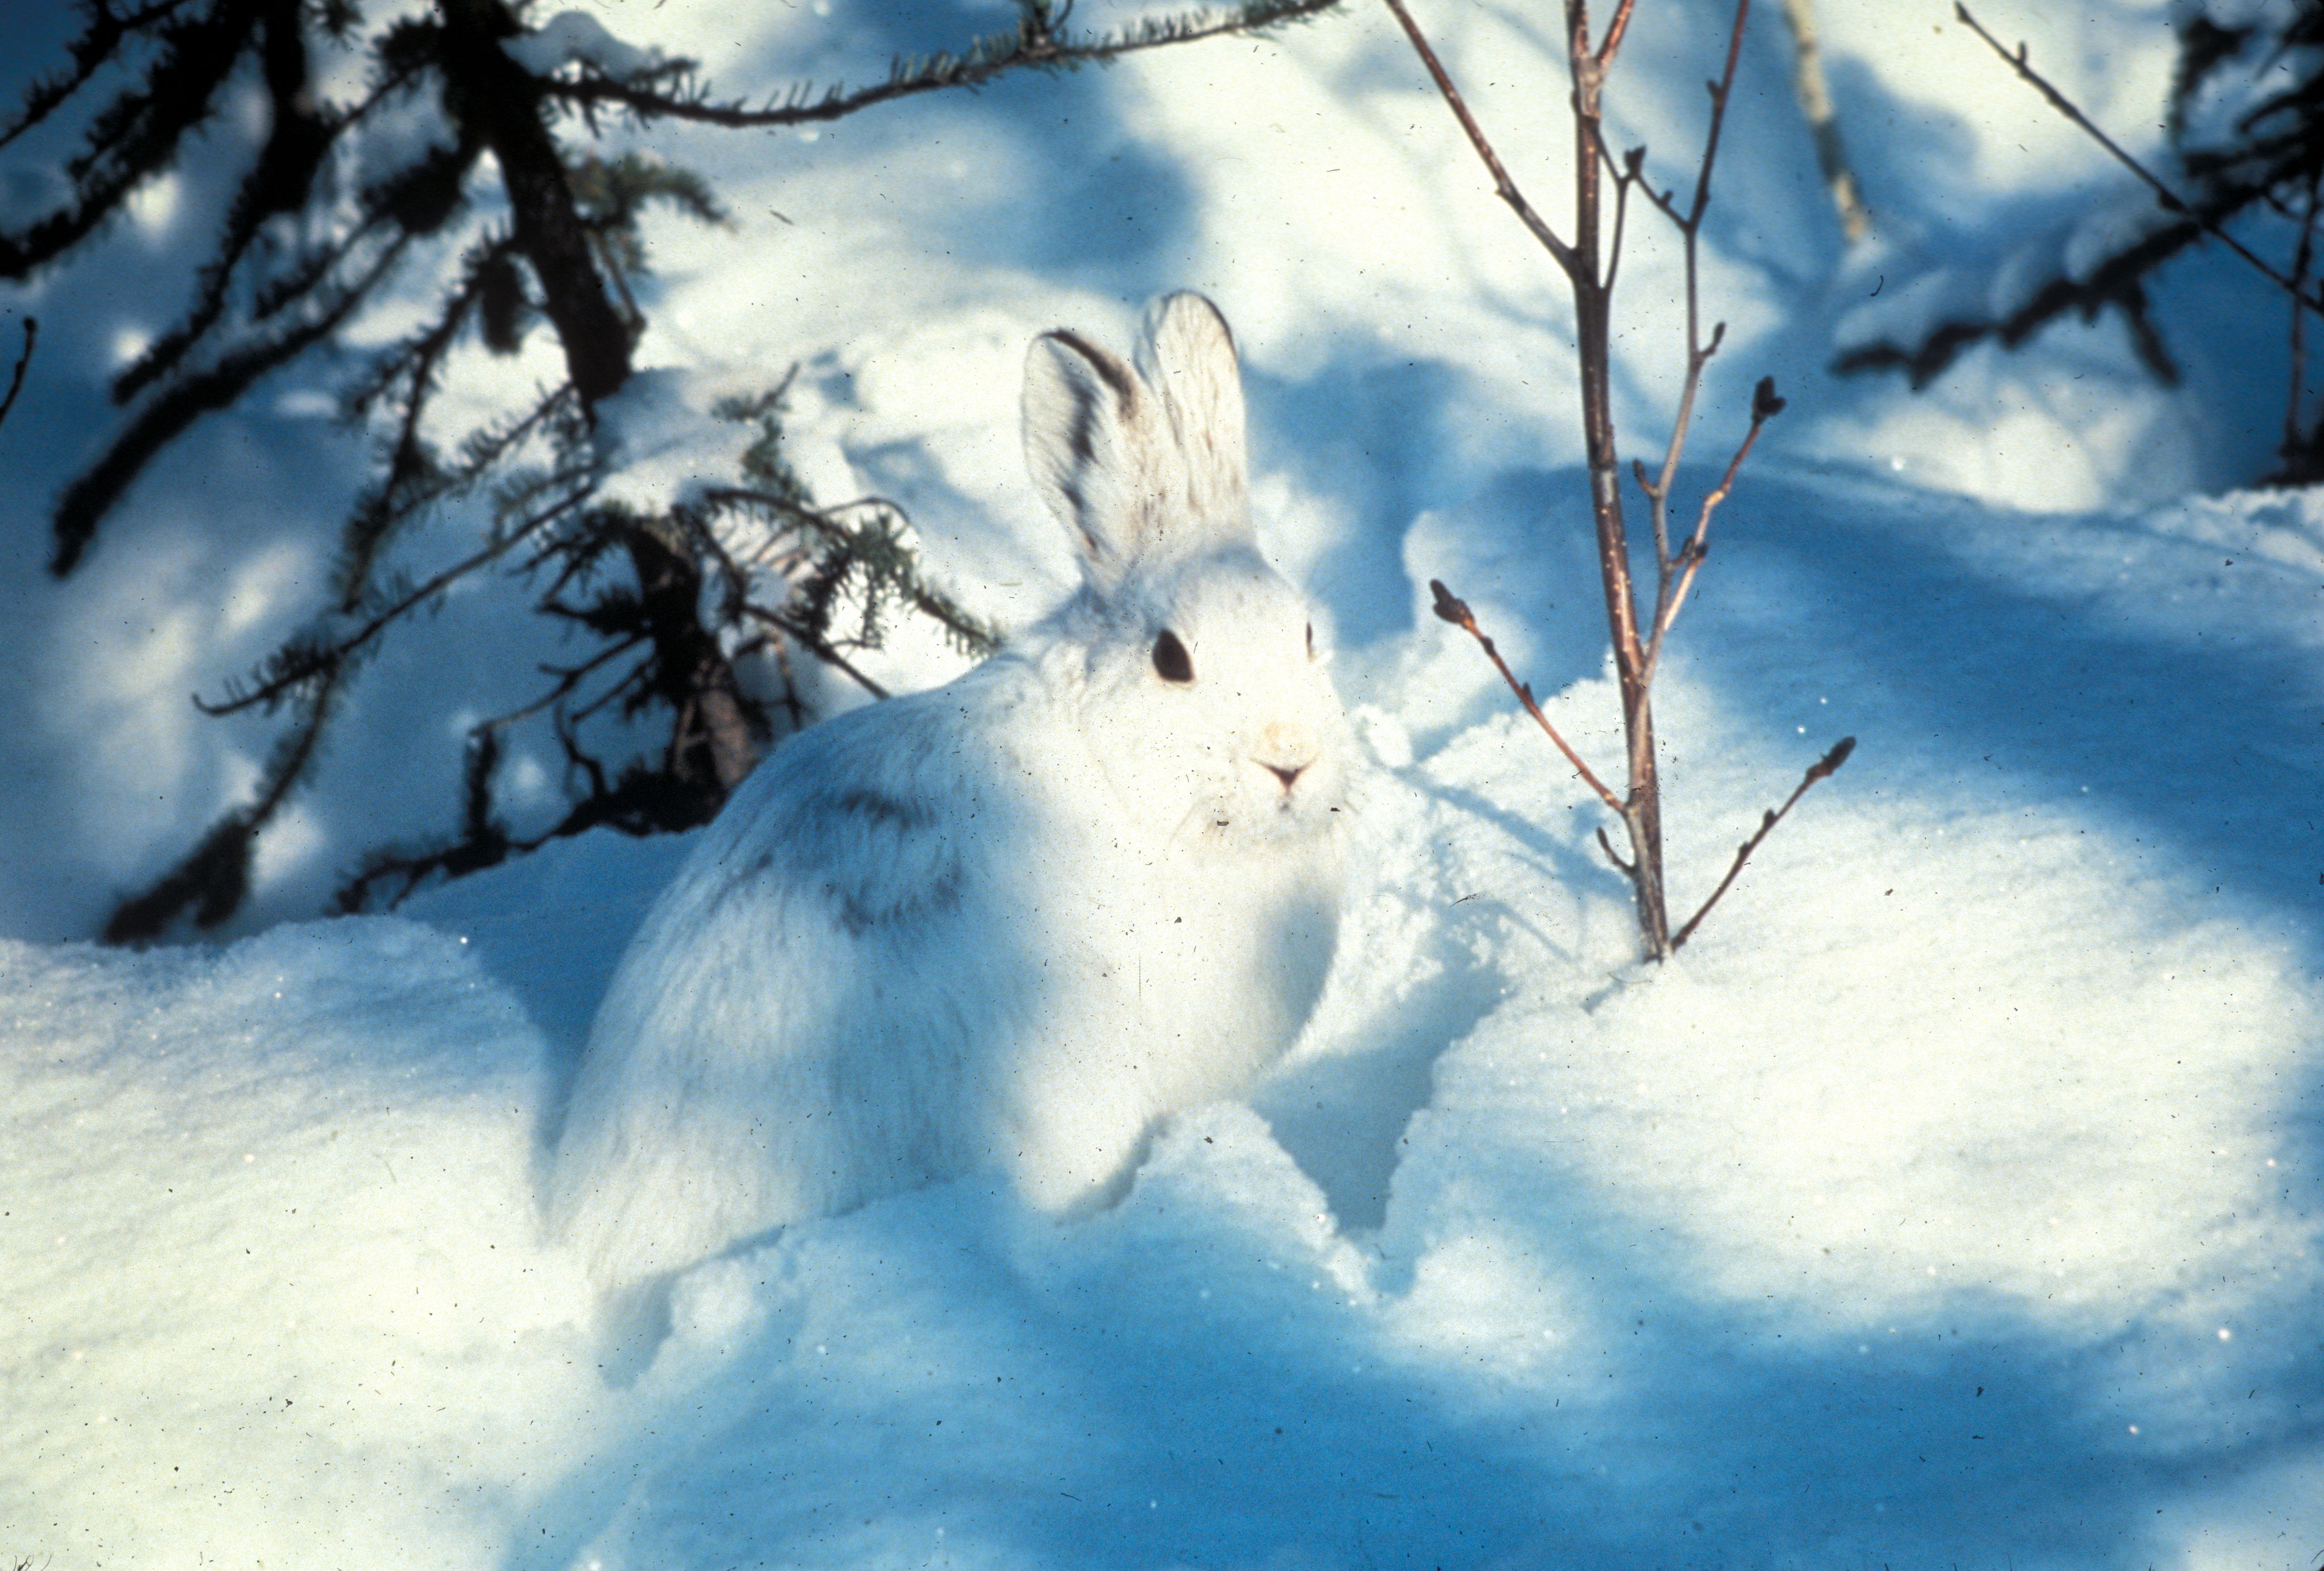 Lepus americanus in the winter